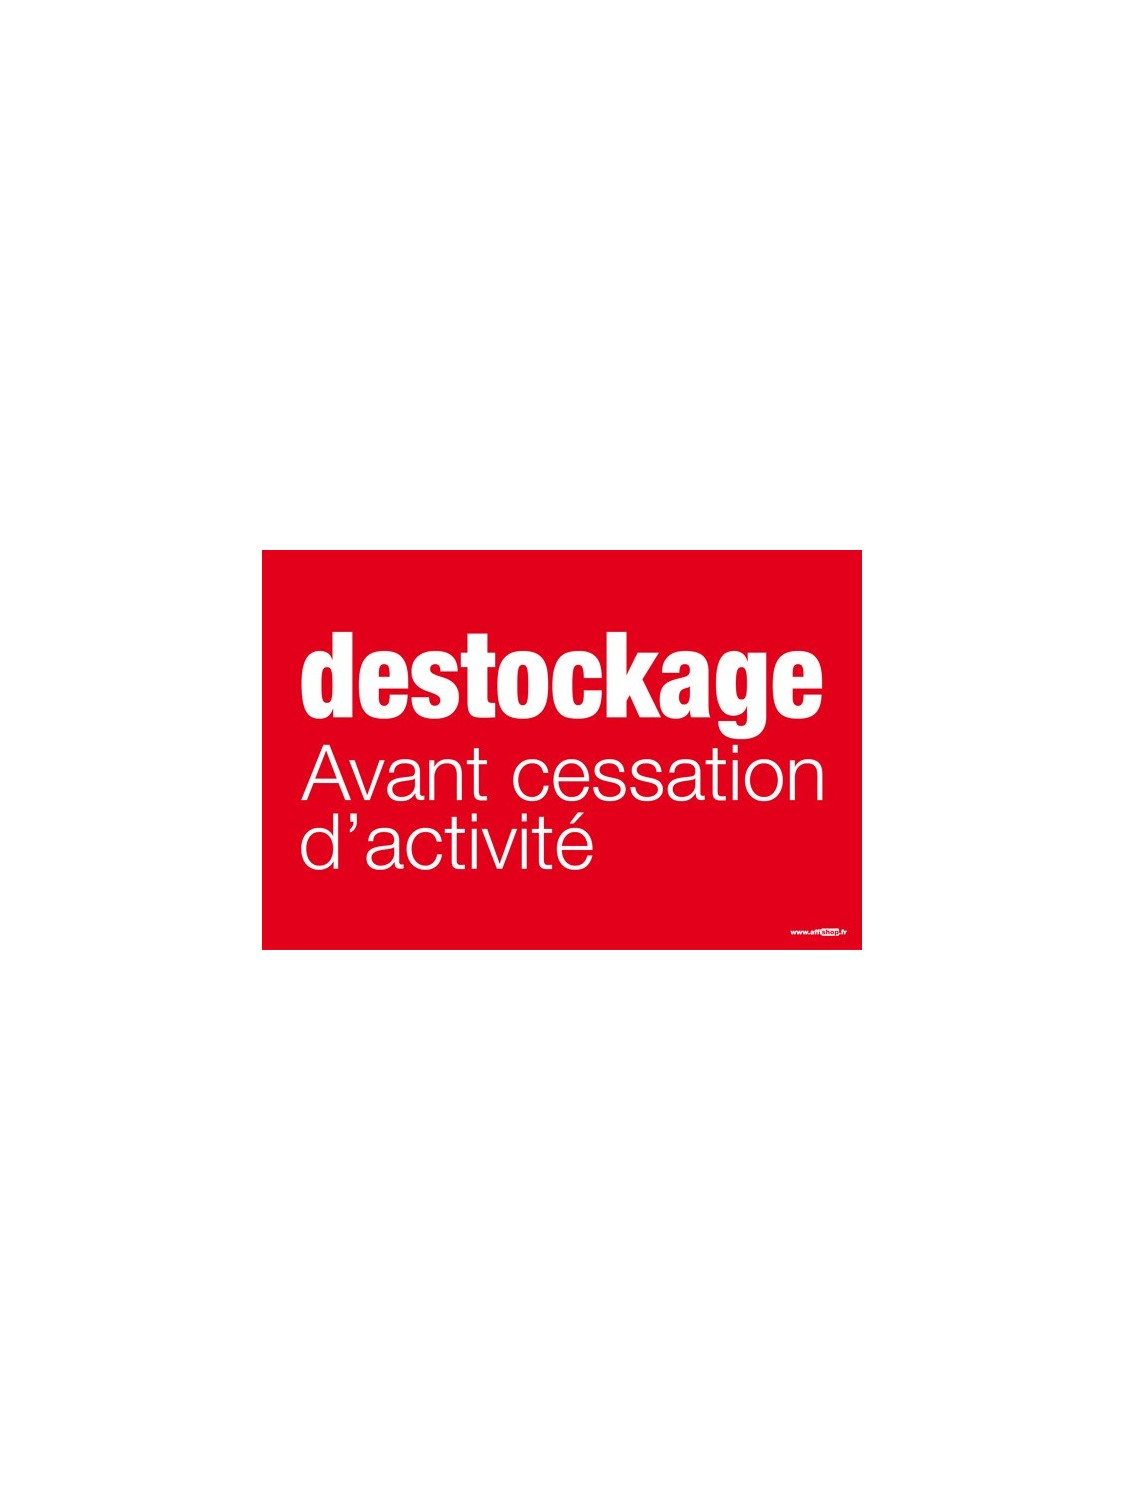 Affiche "destockage avant cessation d'activité"